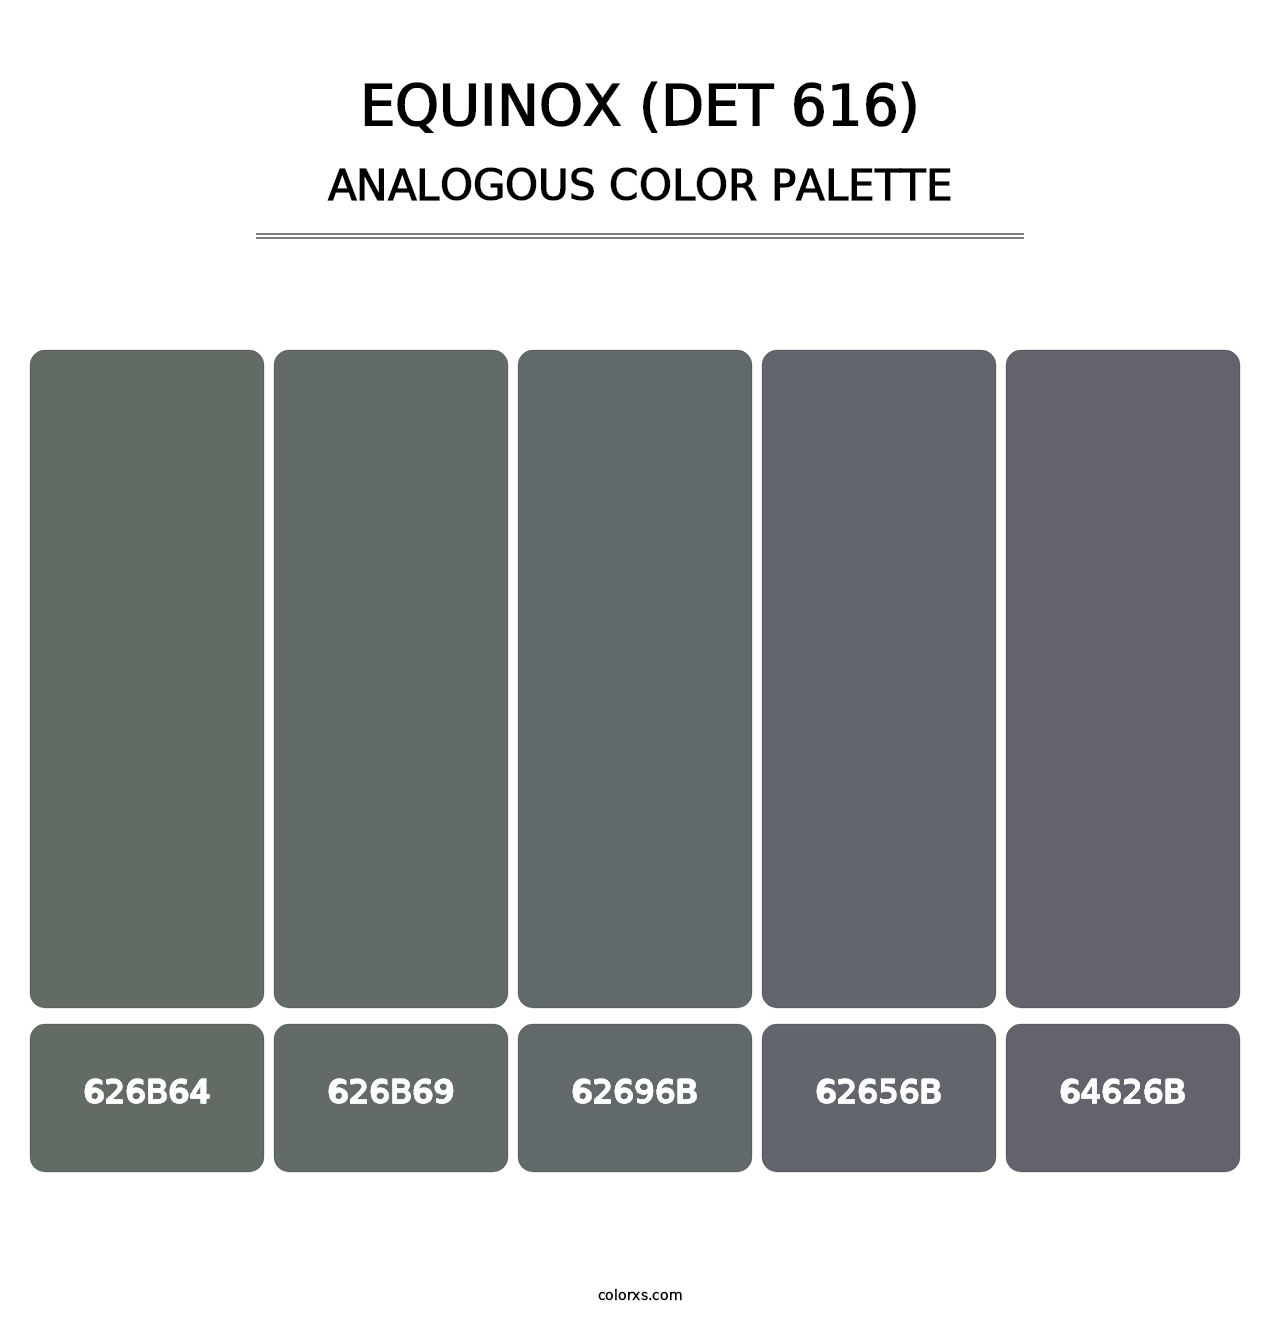 Equinox (DET 616) - Analogous Color Palette